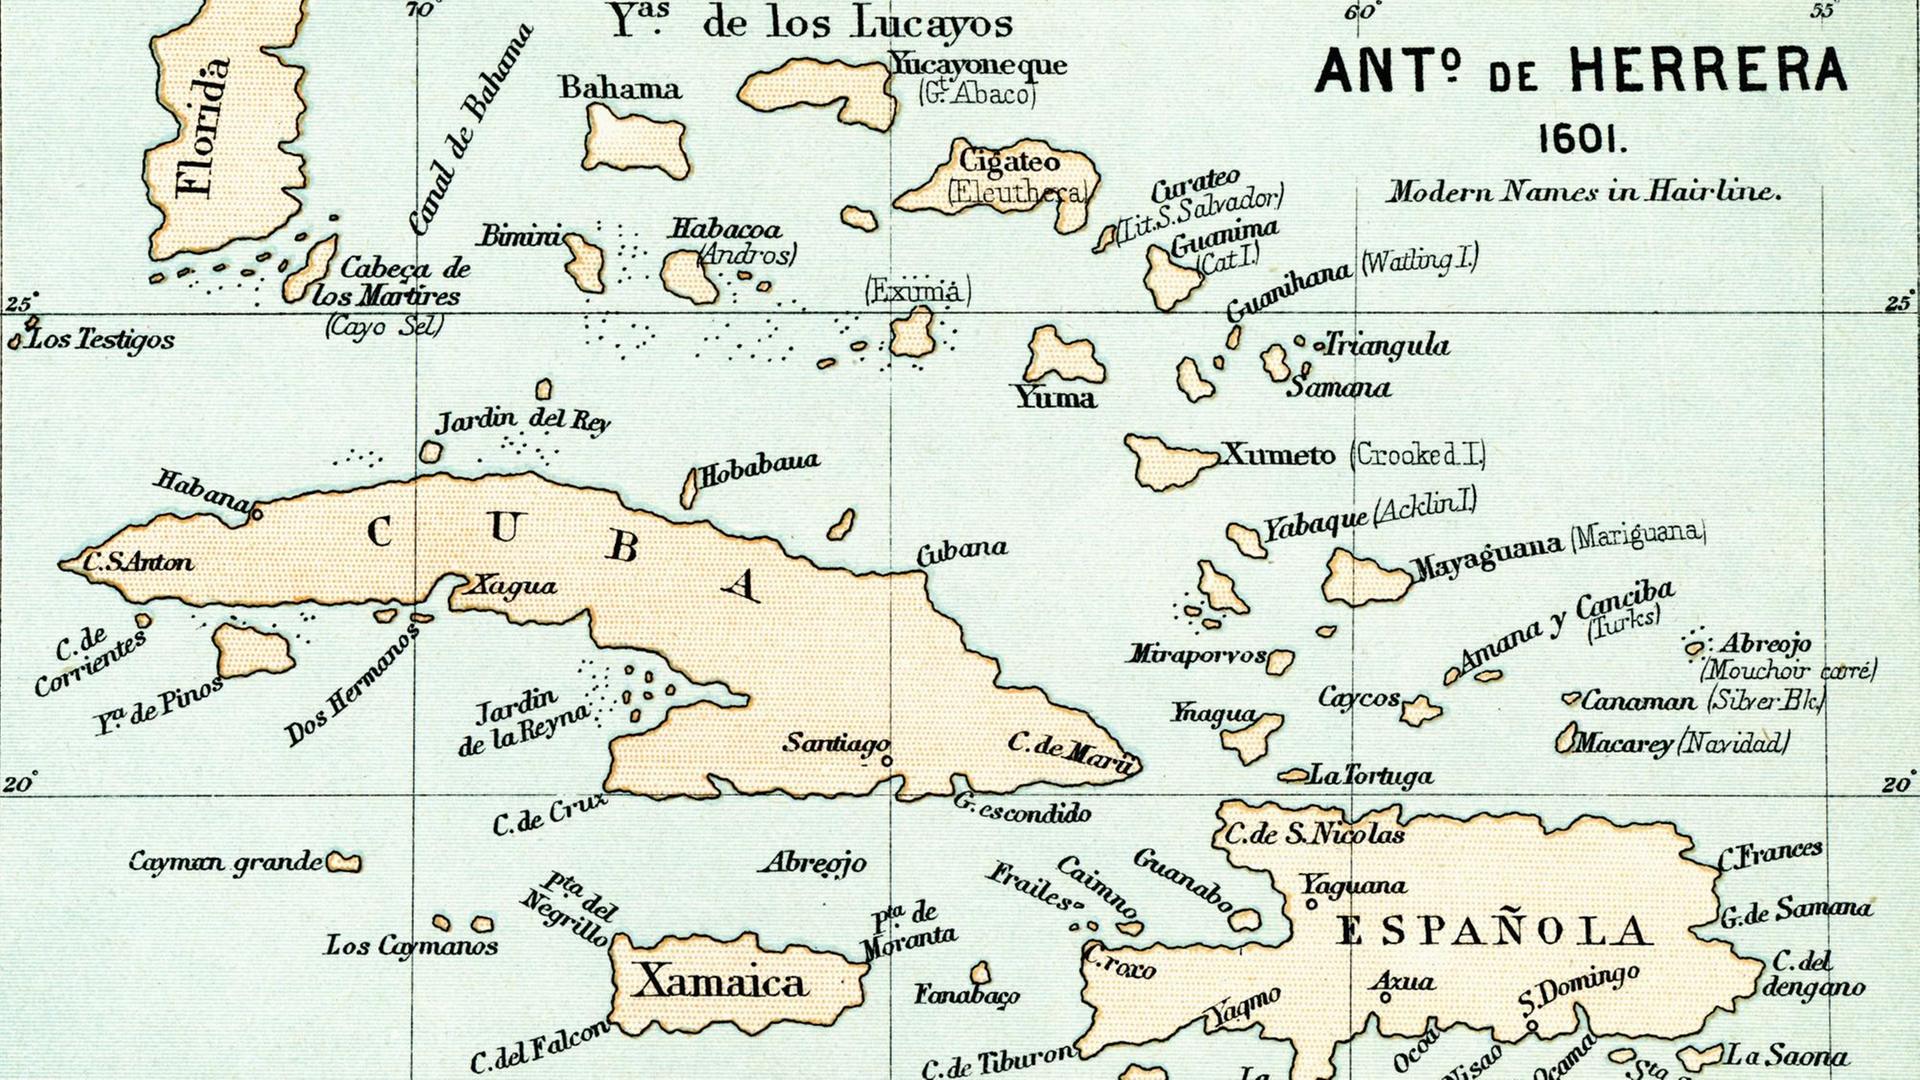 Alte Karte der Bahamas, von 1601 aus dem Buch "Das Leben des Christopher Columbus" von Clements R. Markham